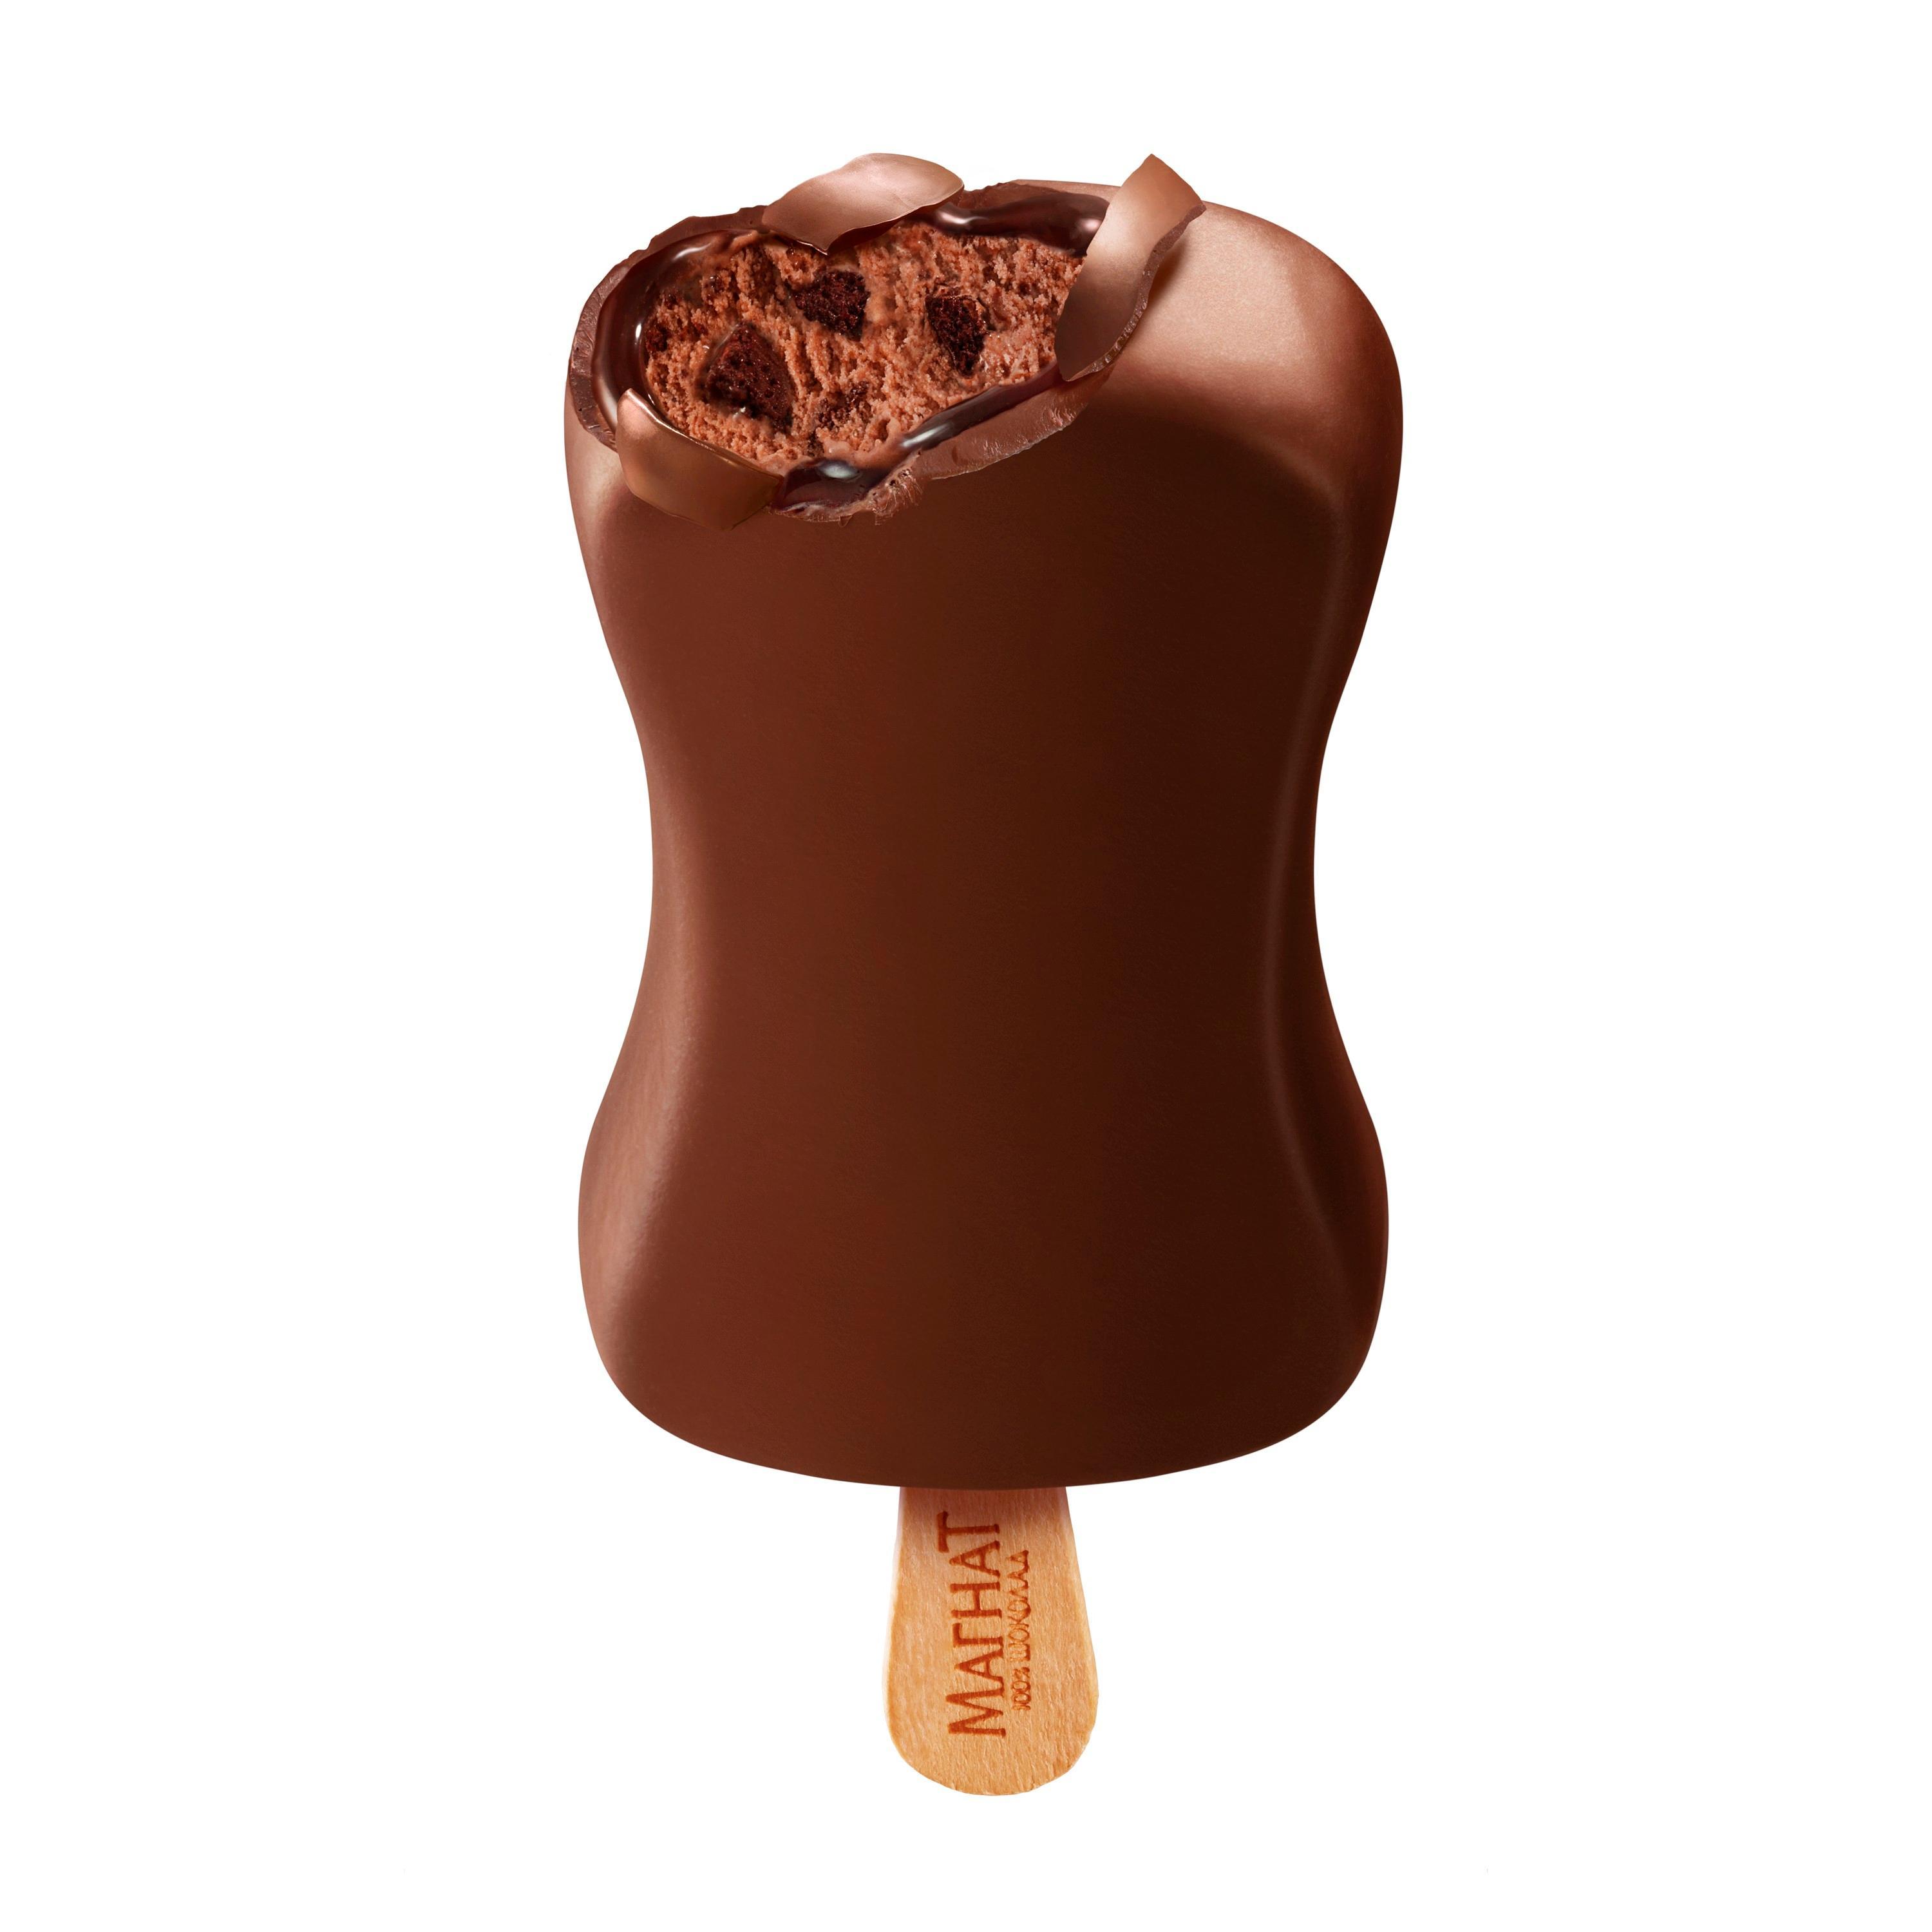 Мороженое Магнат шоколадный трюфель 80 гр., флоу-пак